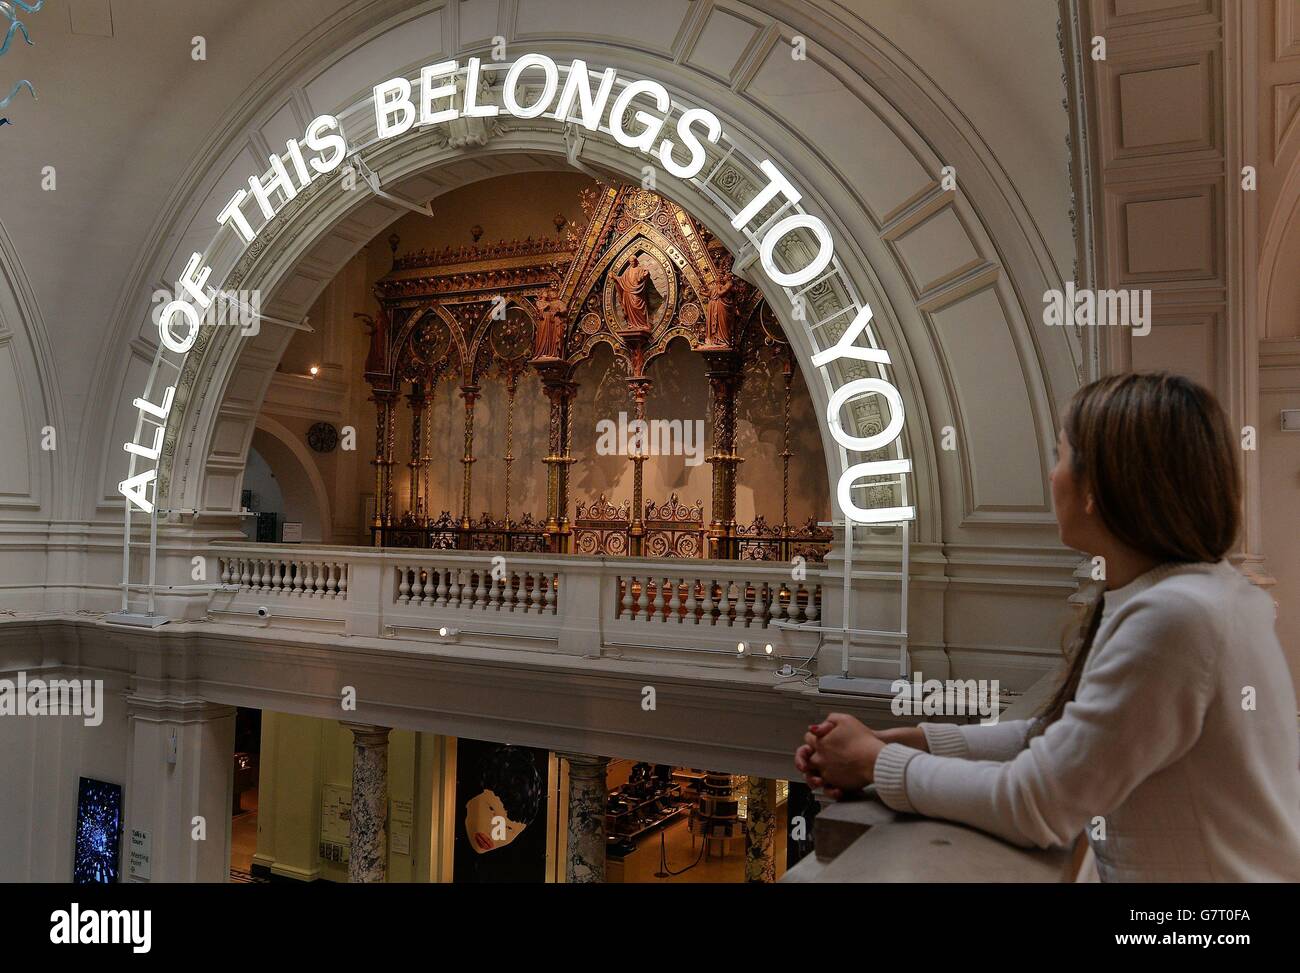 Über dem Haupteingang des Victoria & Albert Museums, wo am 1. April in London die Ausstellung „All of This Belongs To You“ für die Öffentlichkeit zugänglich ist, hängt ein Neonschild. Stockfoto